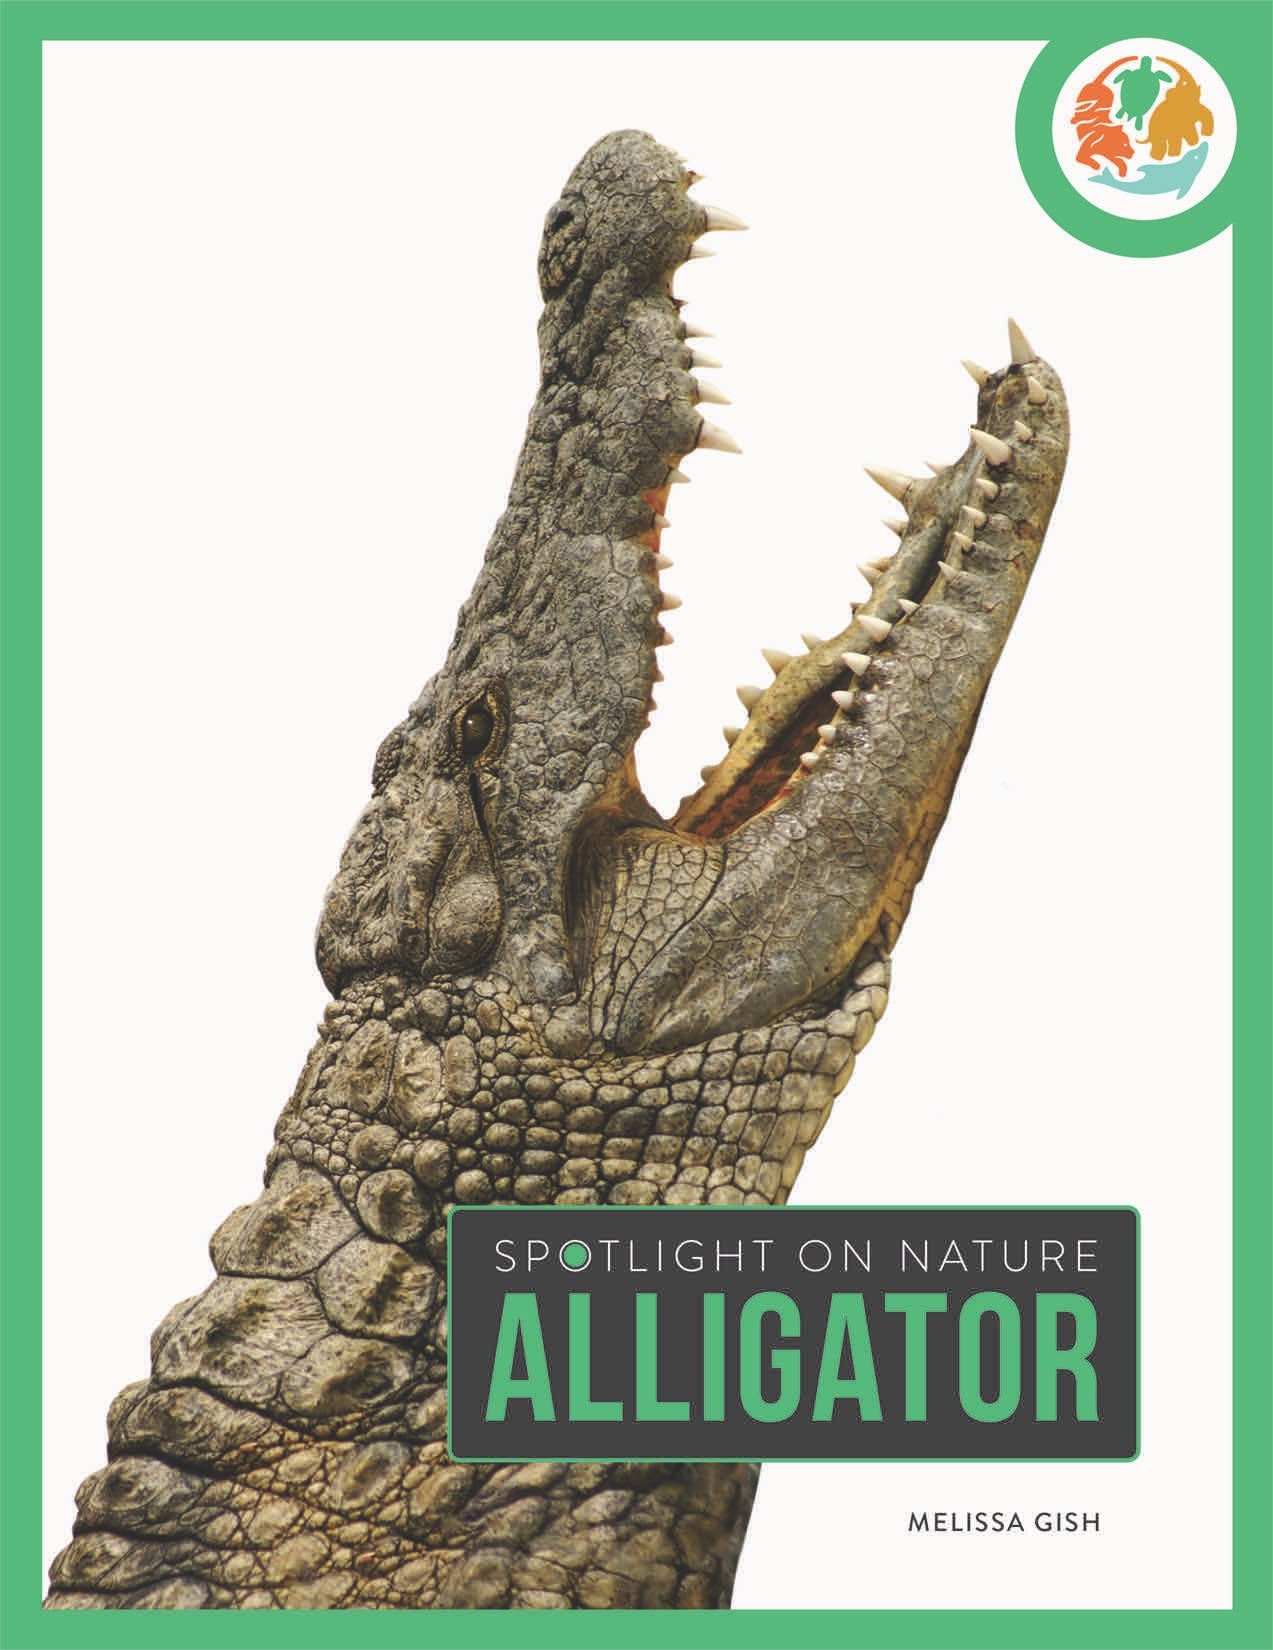 Die Natur im Rampenlicht: Alligator